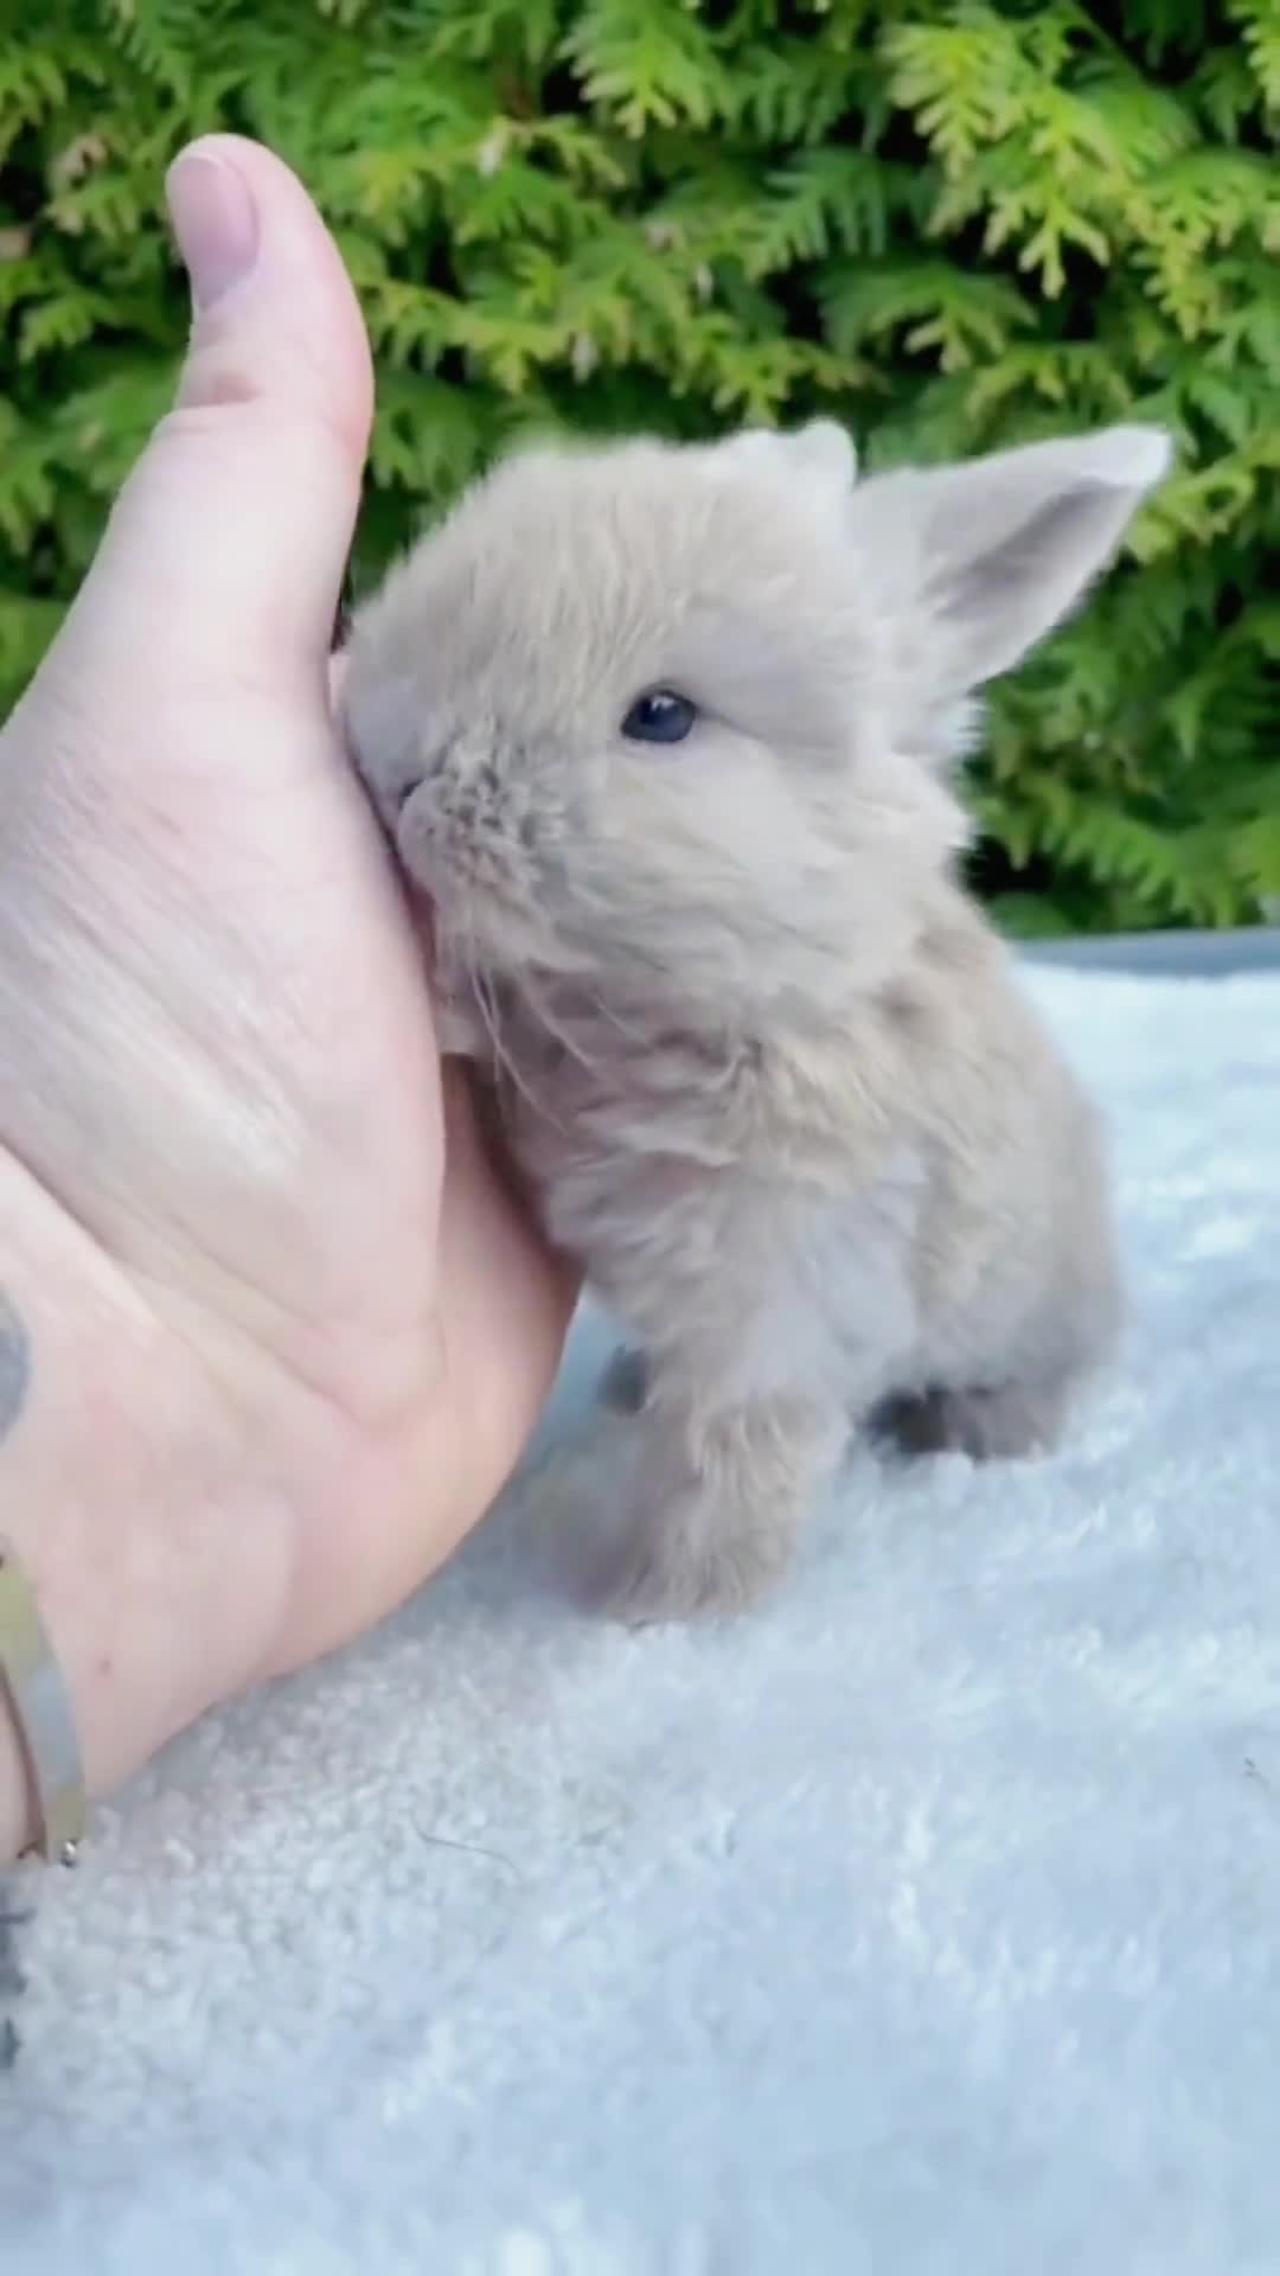 Lovely rabbit.